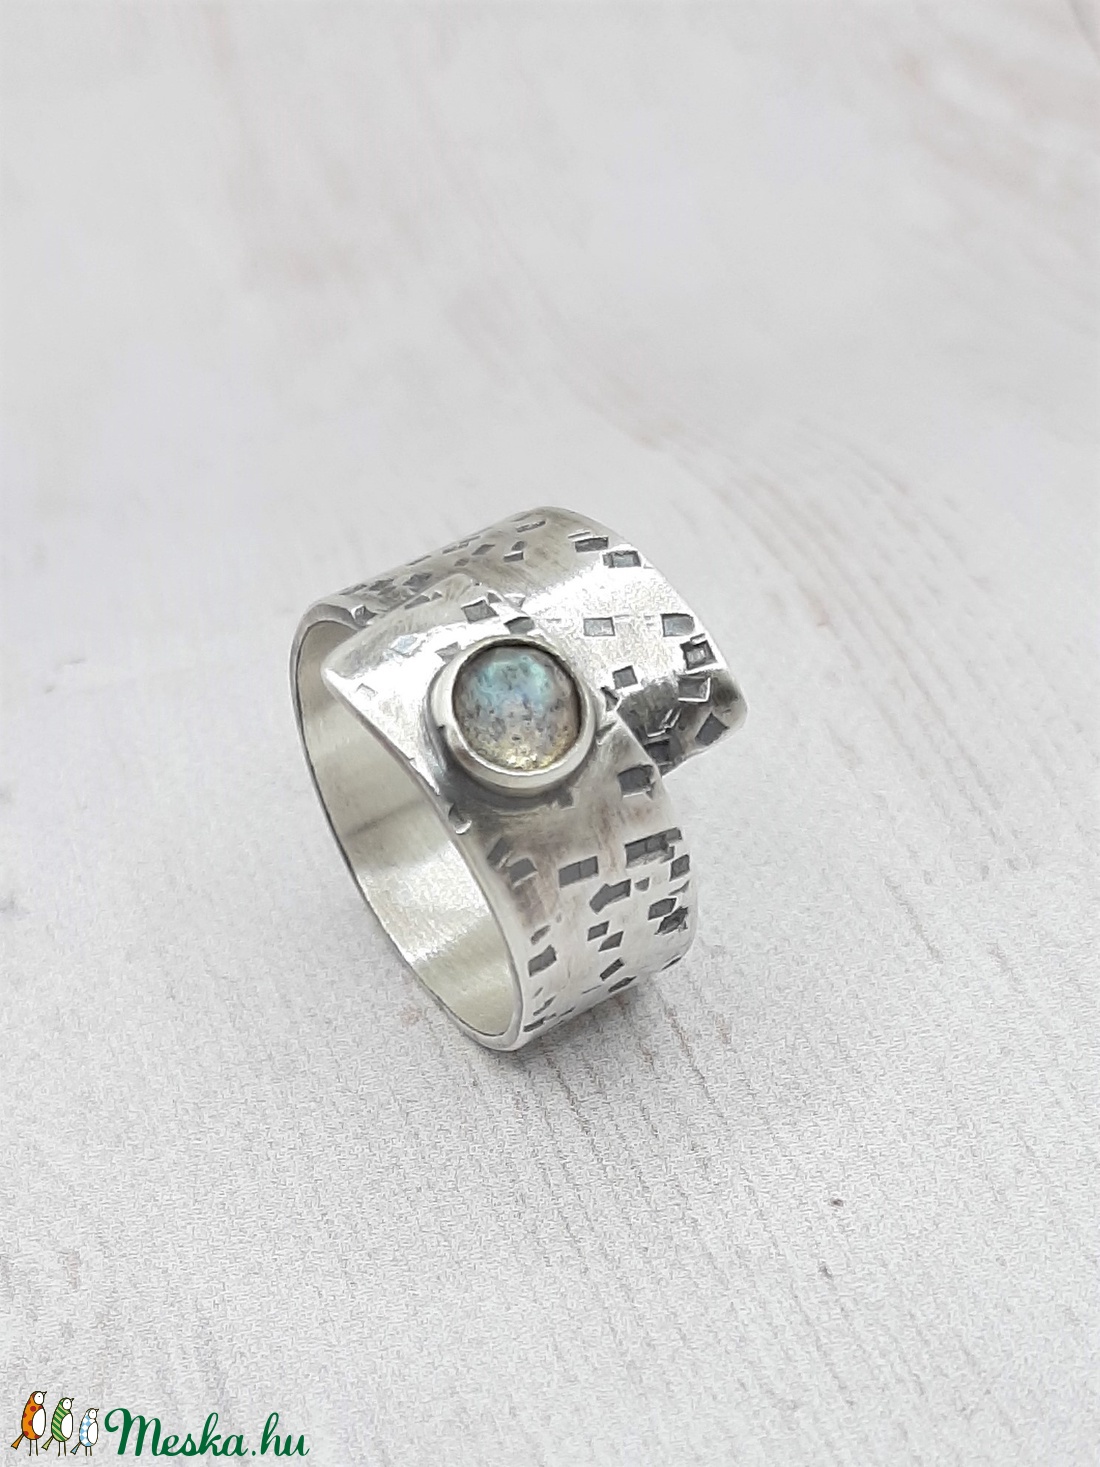 Labradorit ezüst gyűrű  - ékszer - gyűrű - statement gyűrű - Meska.hu